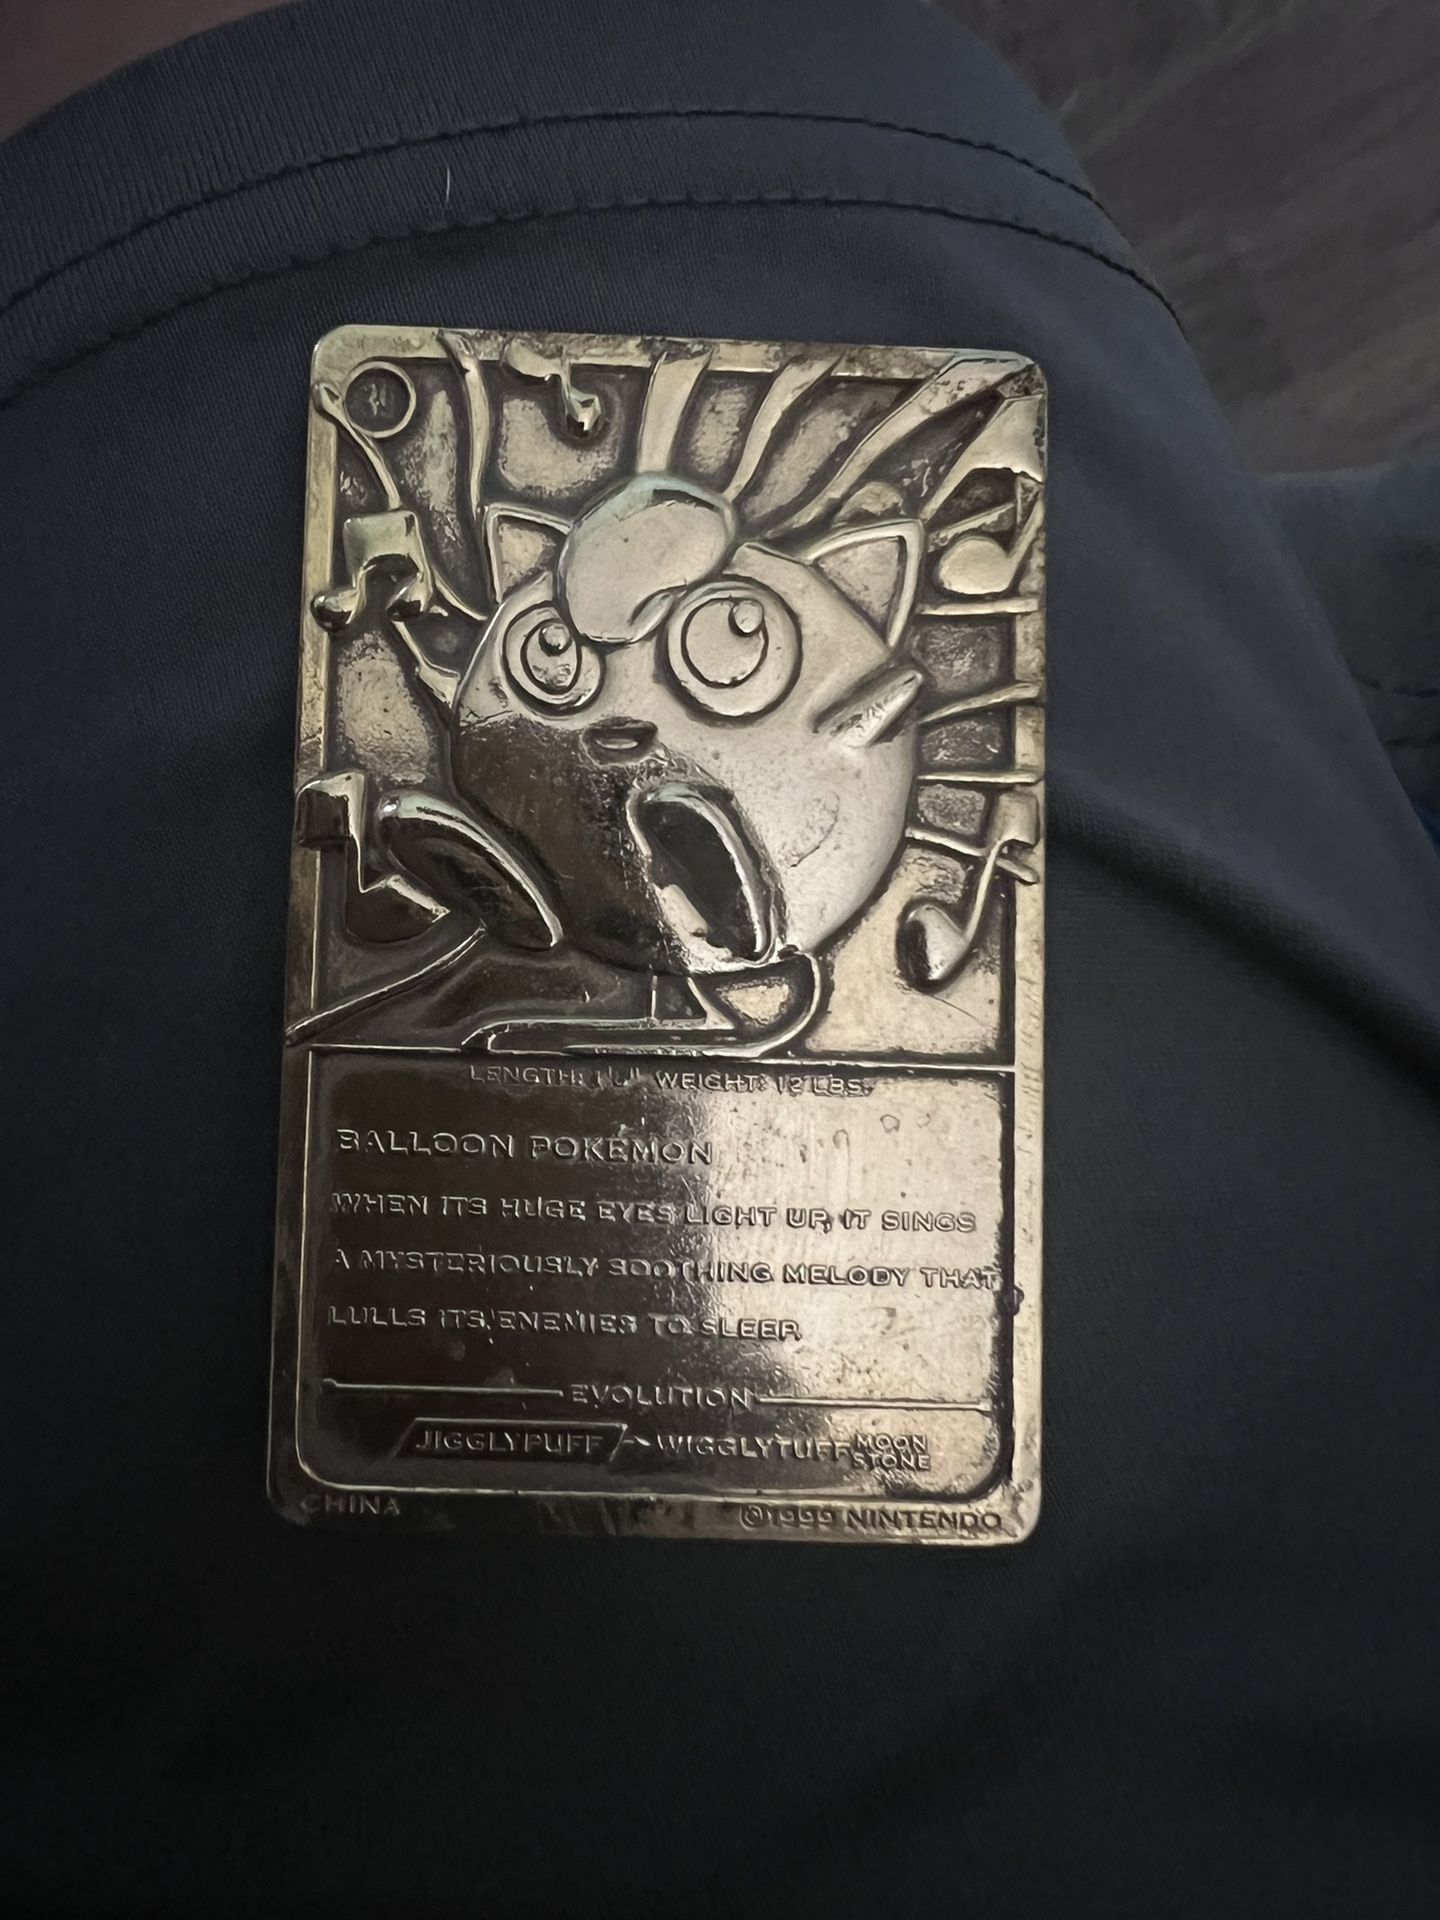 1999 Jigglypuff gold card